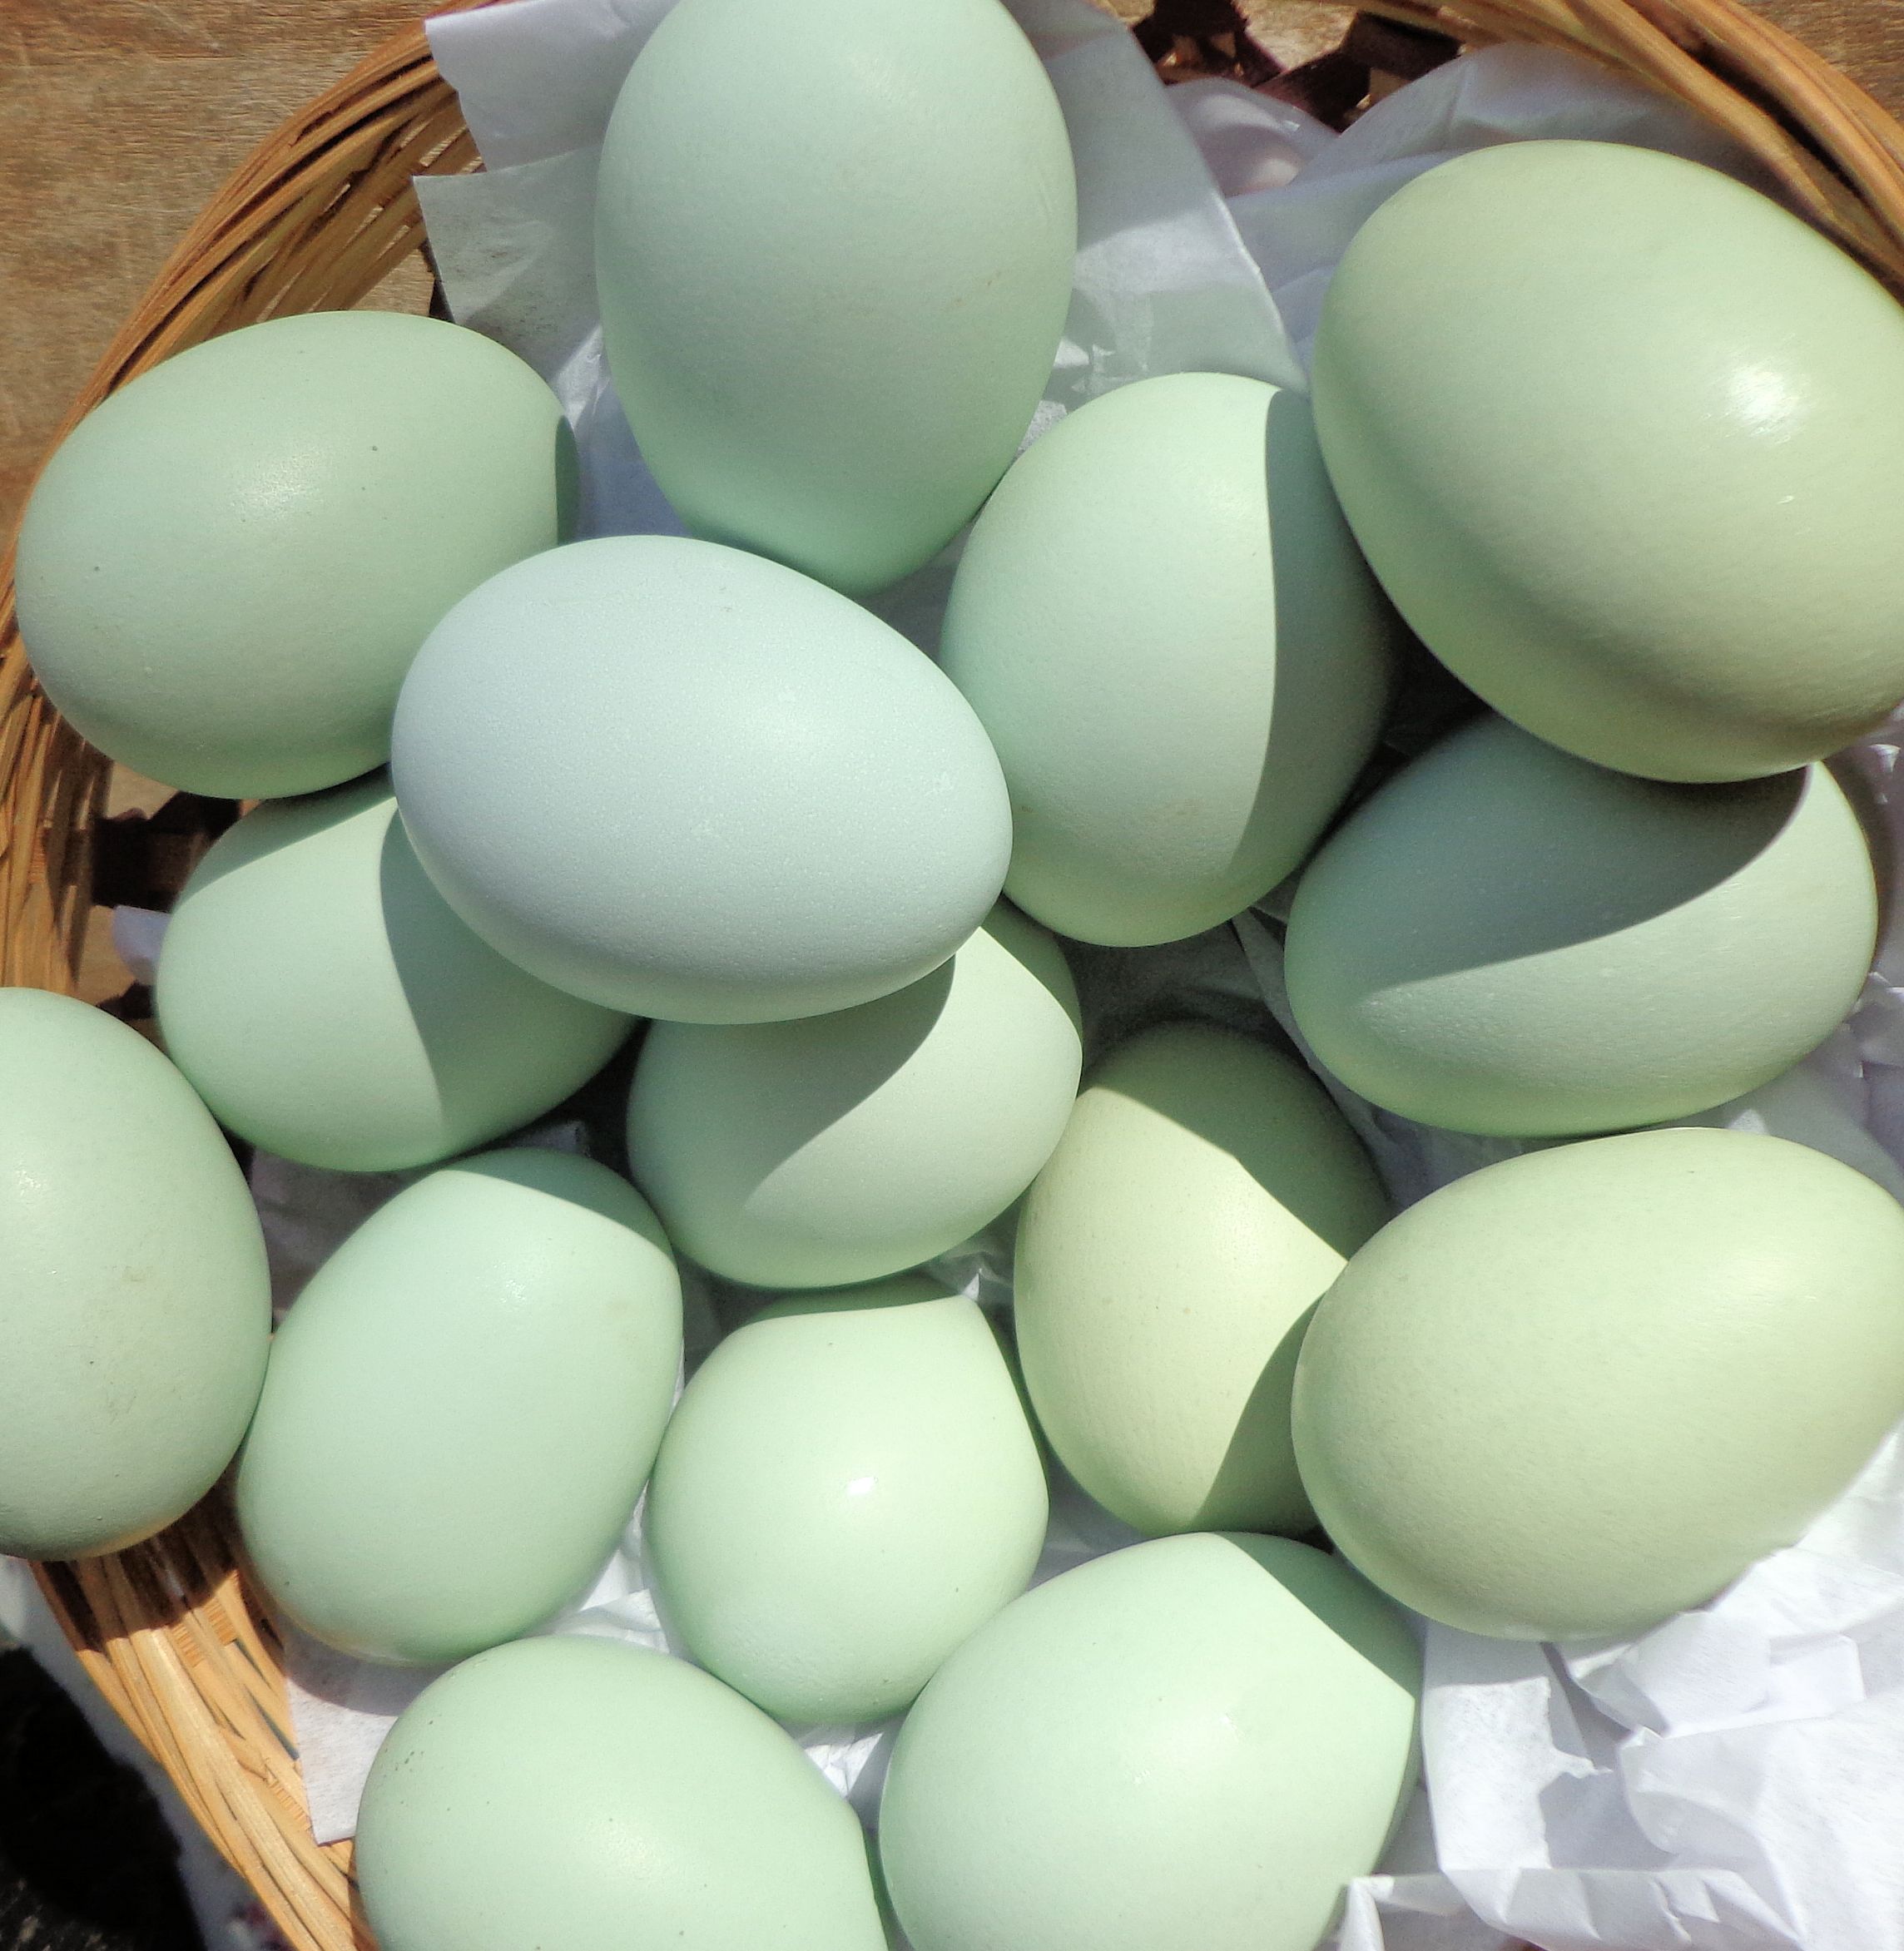 araucana eggs